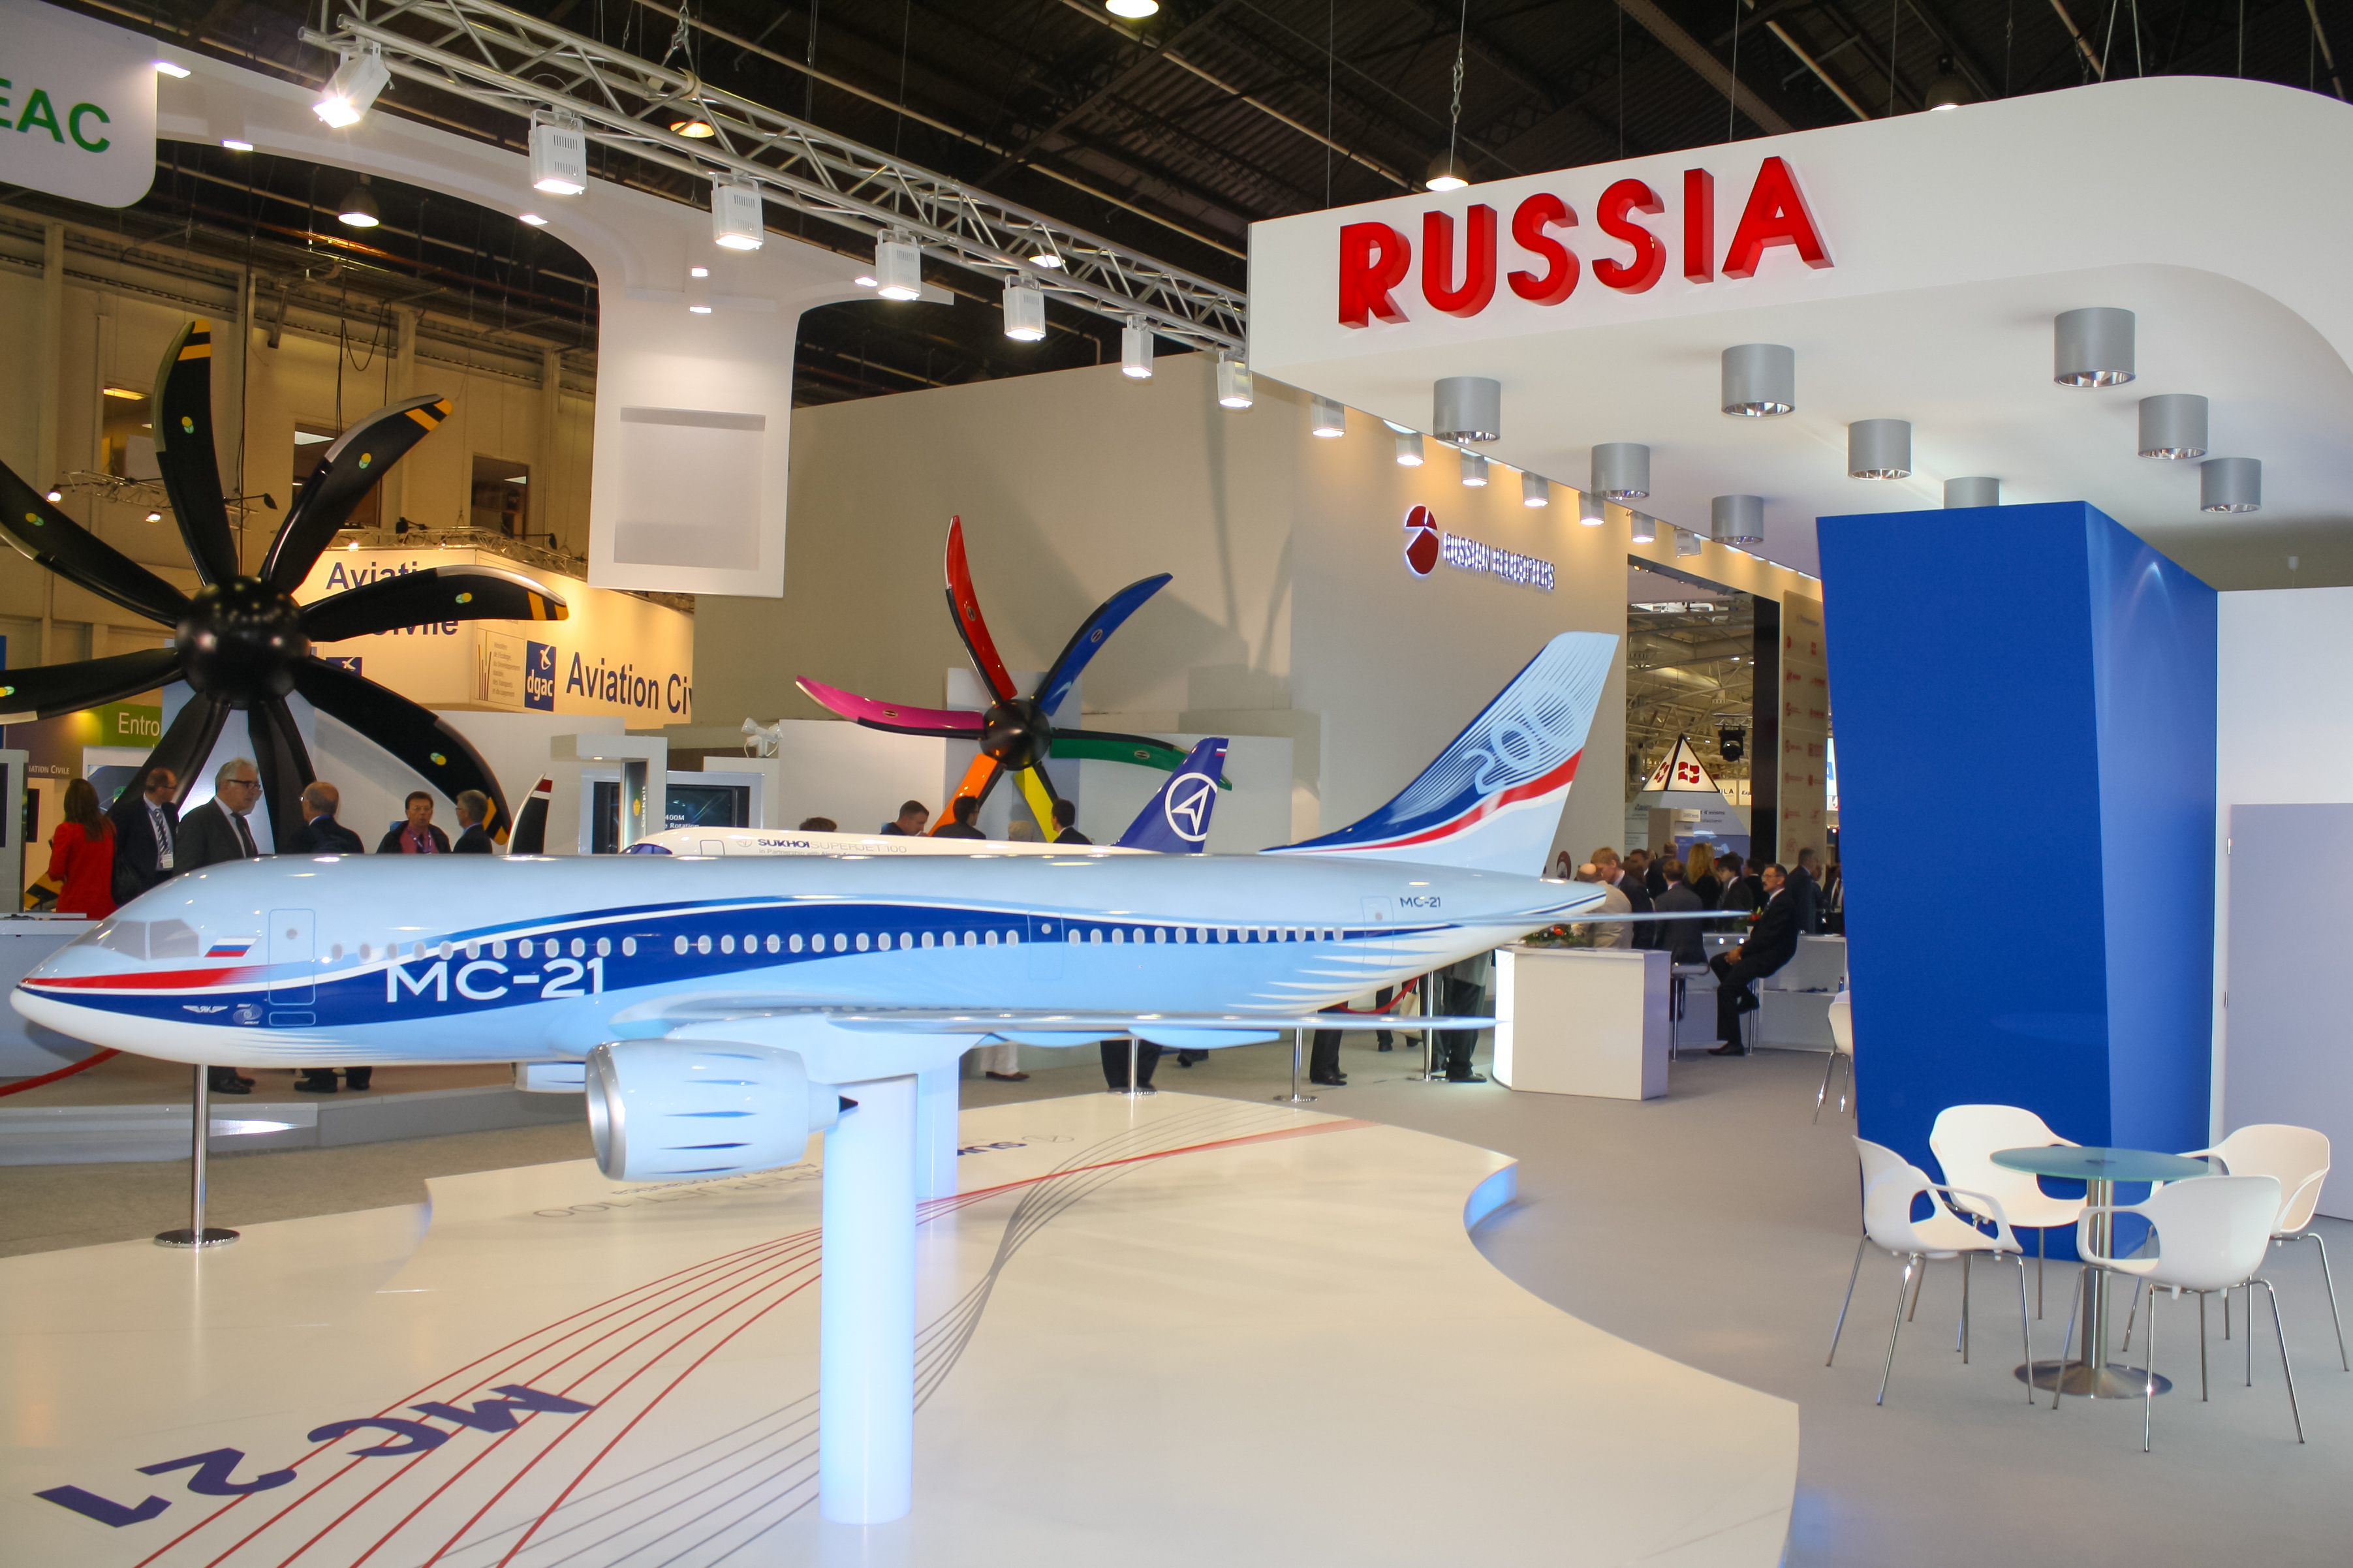 Щандът на Русия с новия пътнически самолет МС-21 на изложението в Бурже /Франция/